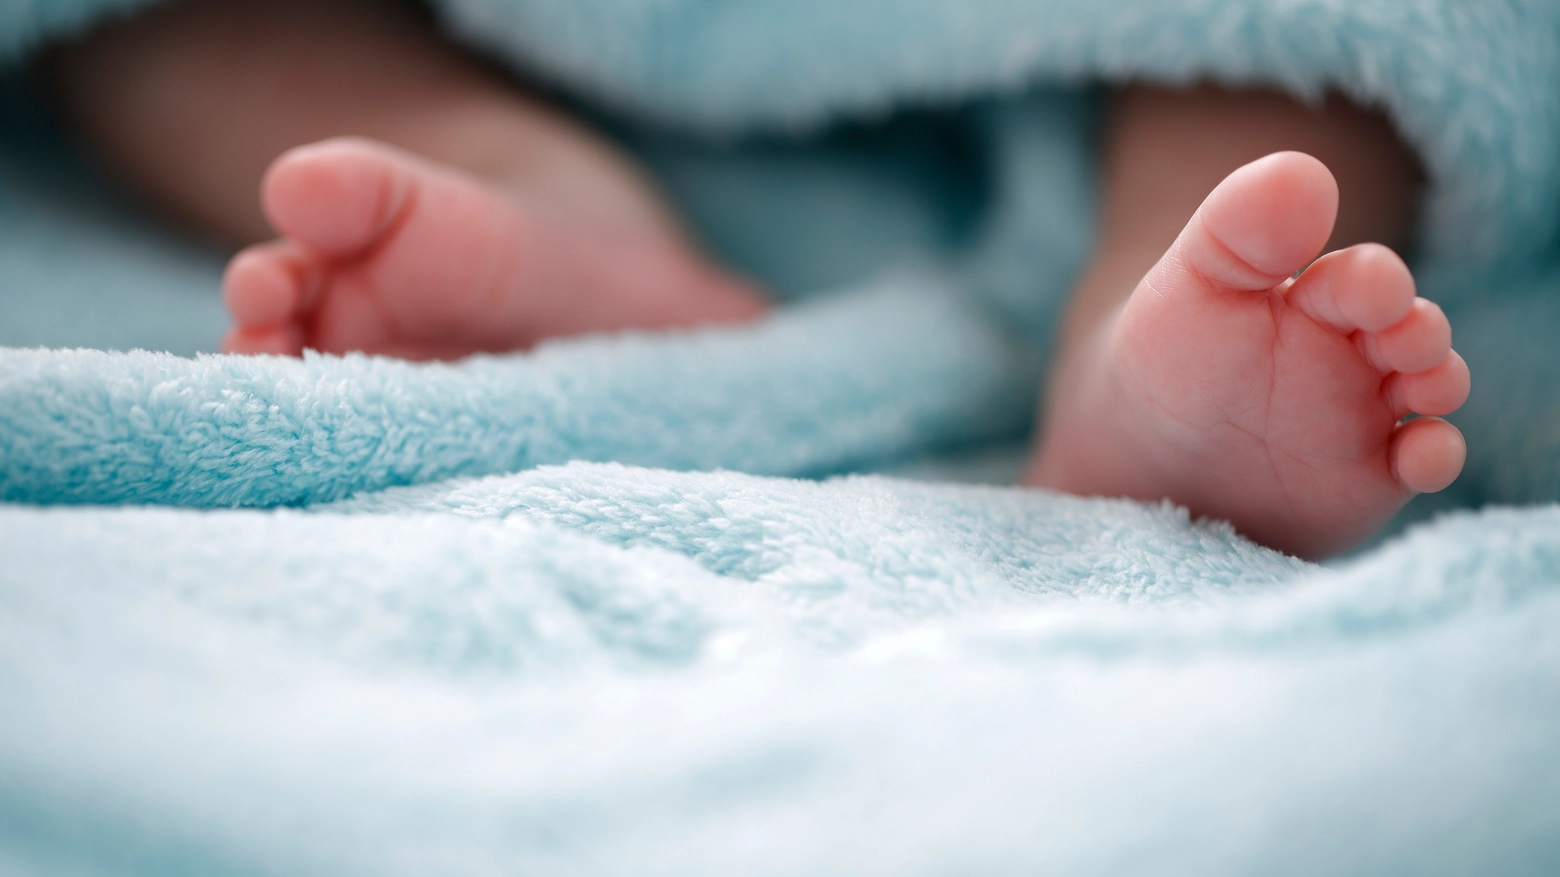 Tragedia all'ospedale di Carpi: neonata venuta alla luce morta